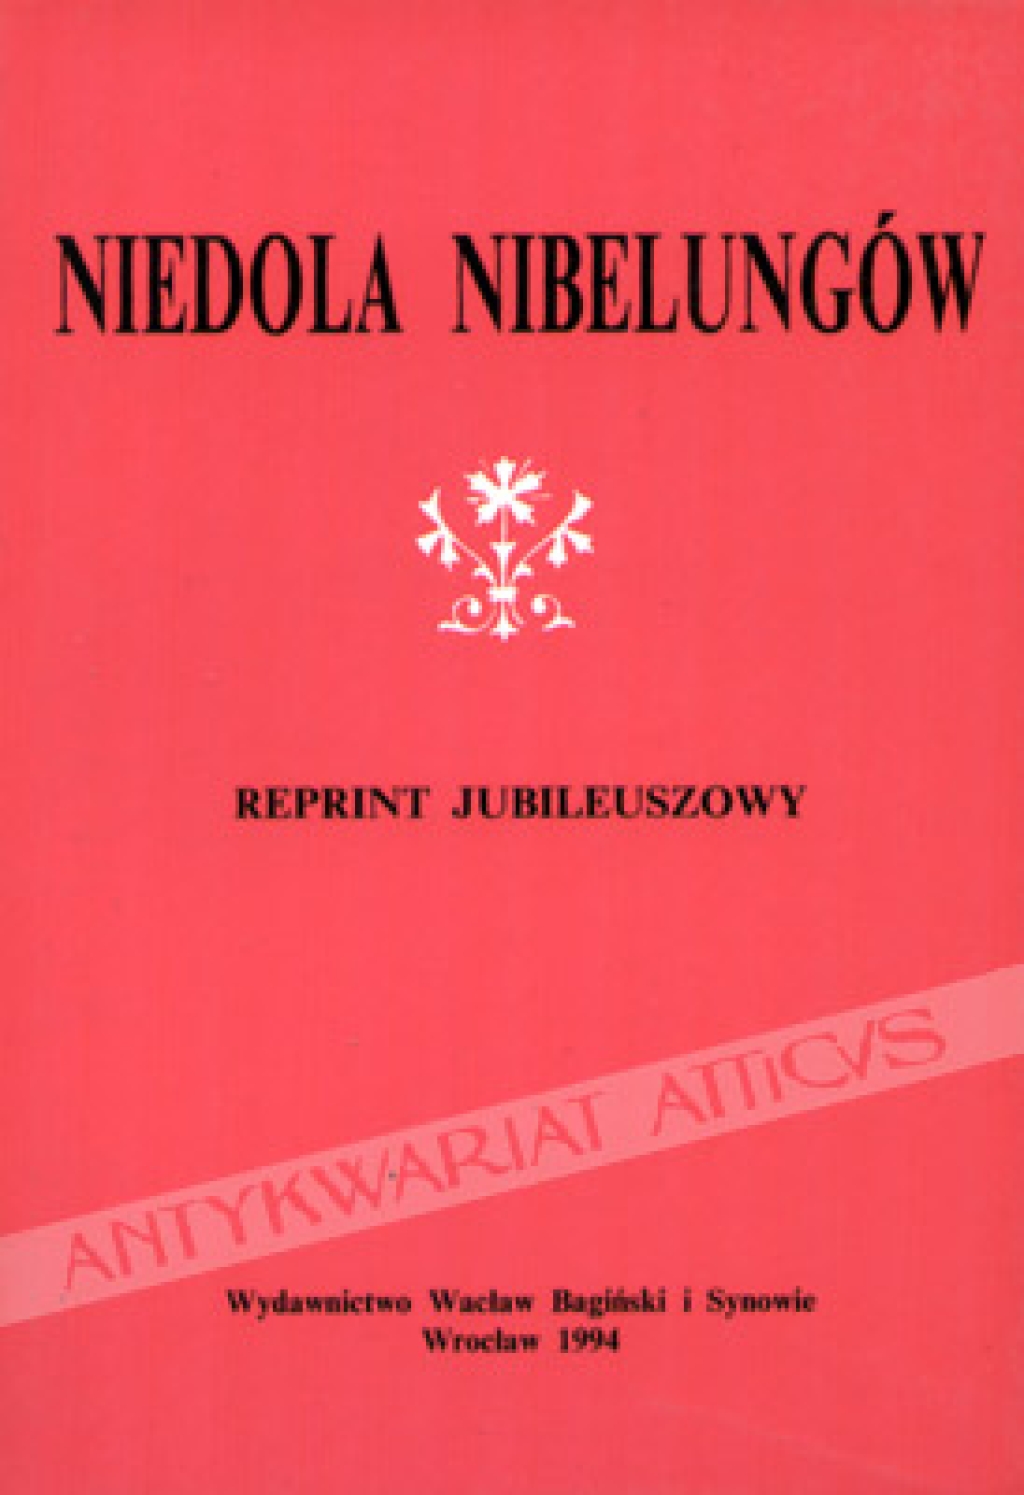 Niedola Nibelungów [reprint jubileuszowy]